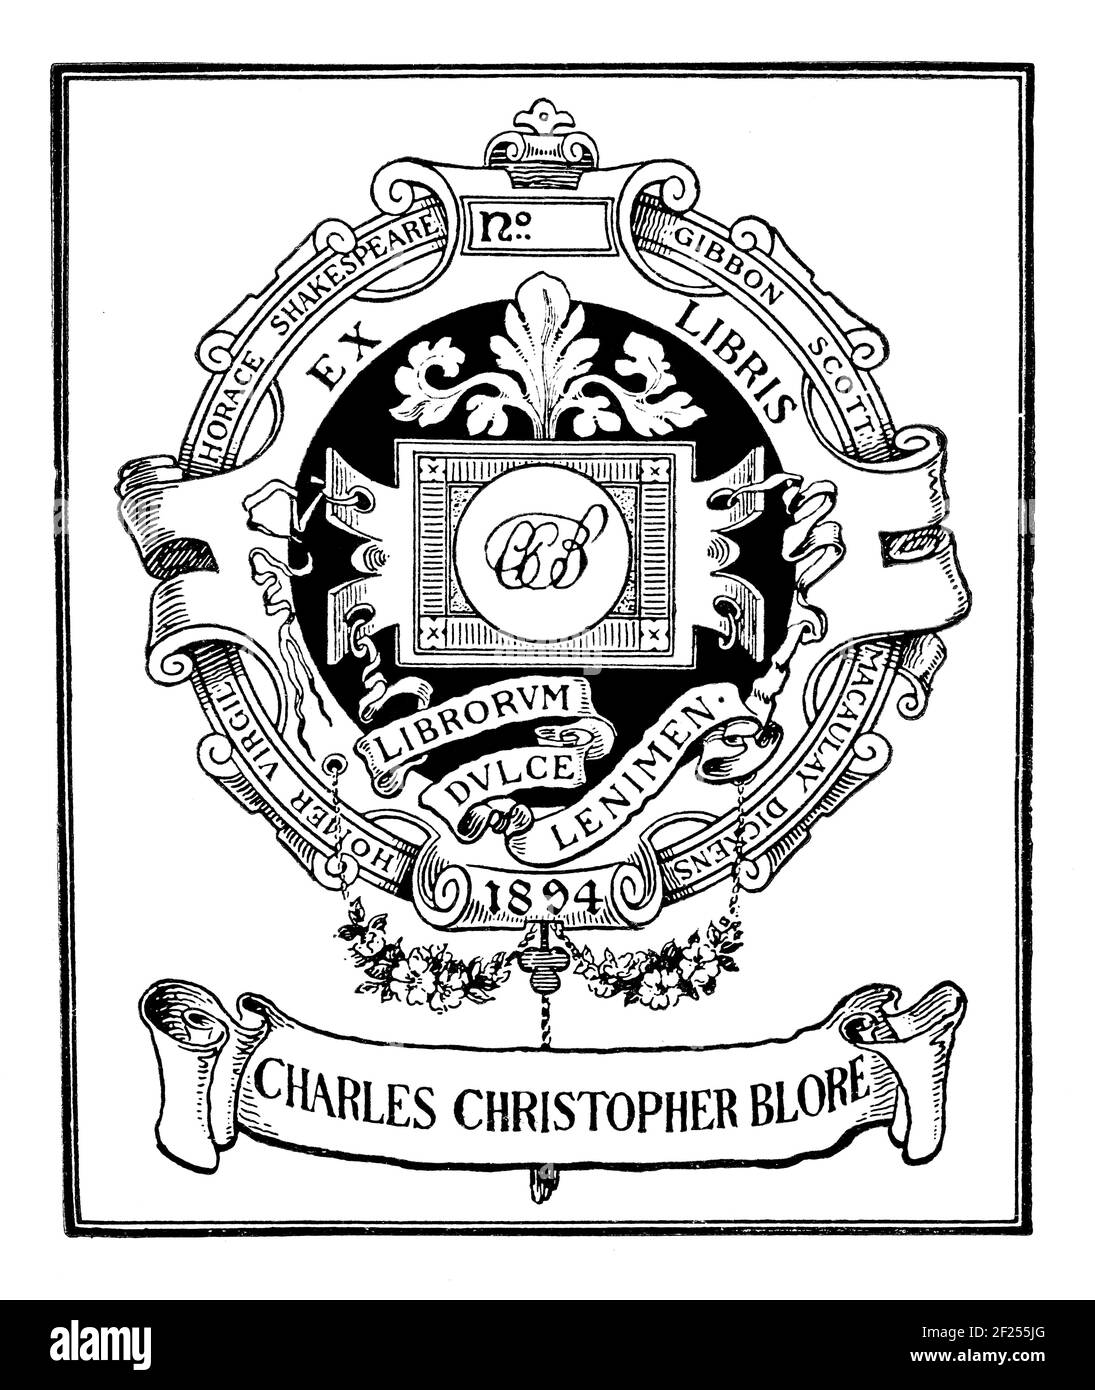 1894 bookplate di Charles Christopher Blore, revisore onorario della Società ex Libris, con motto latino Librorum dulce lenimen - dolce solace della mia b Foto Stock